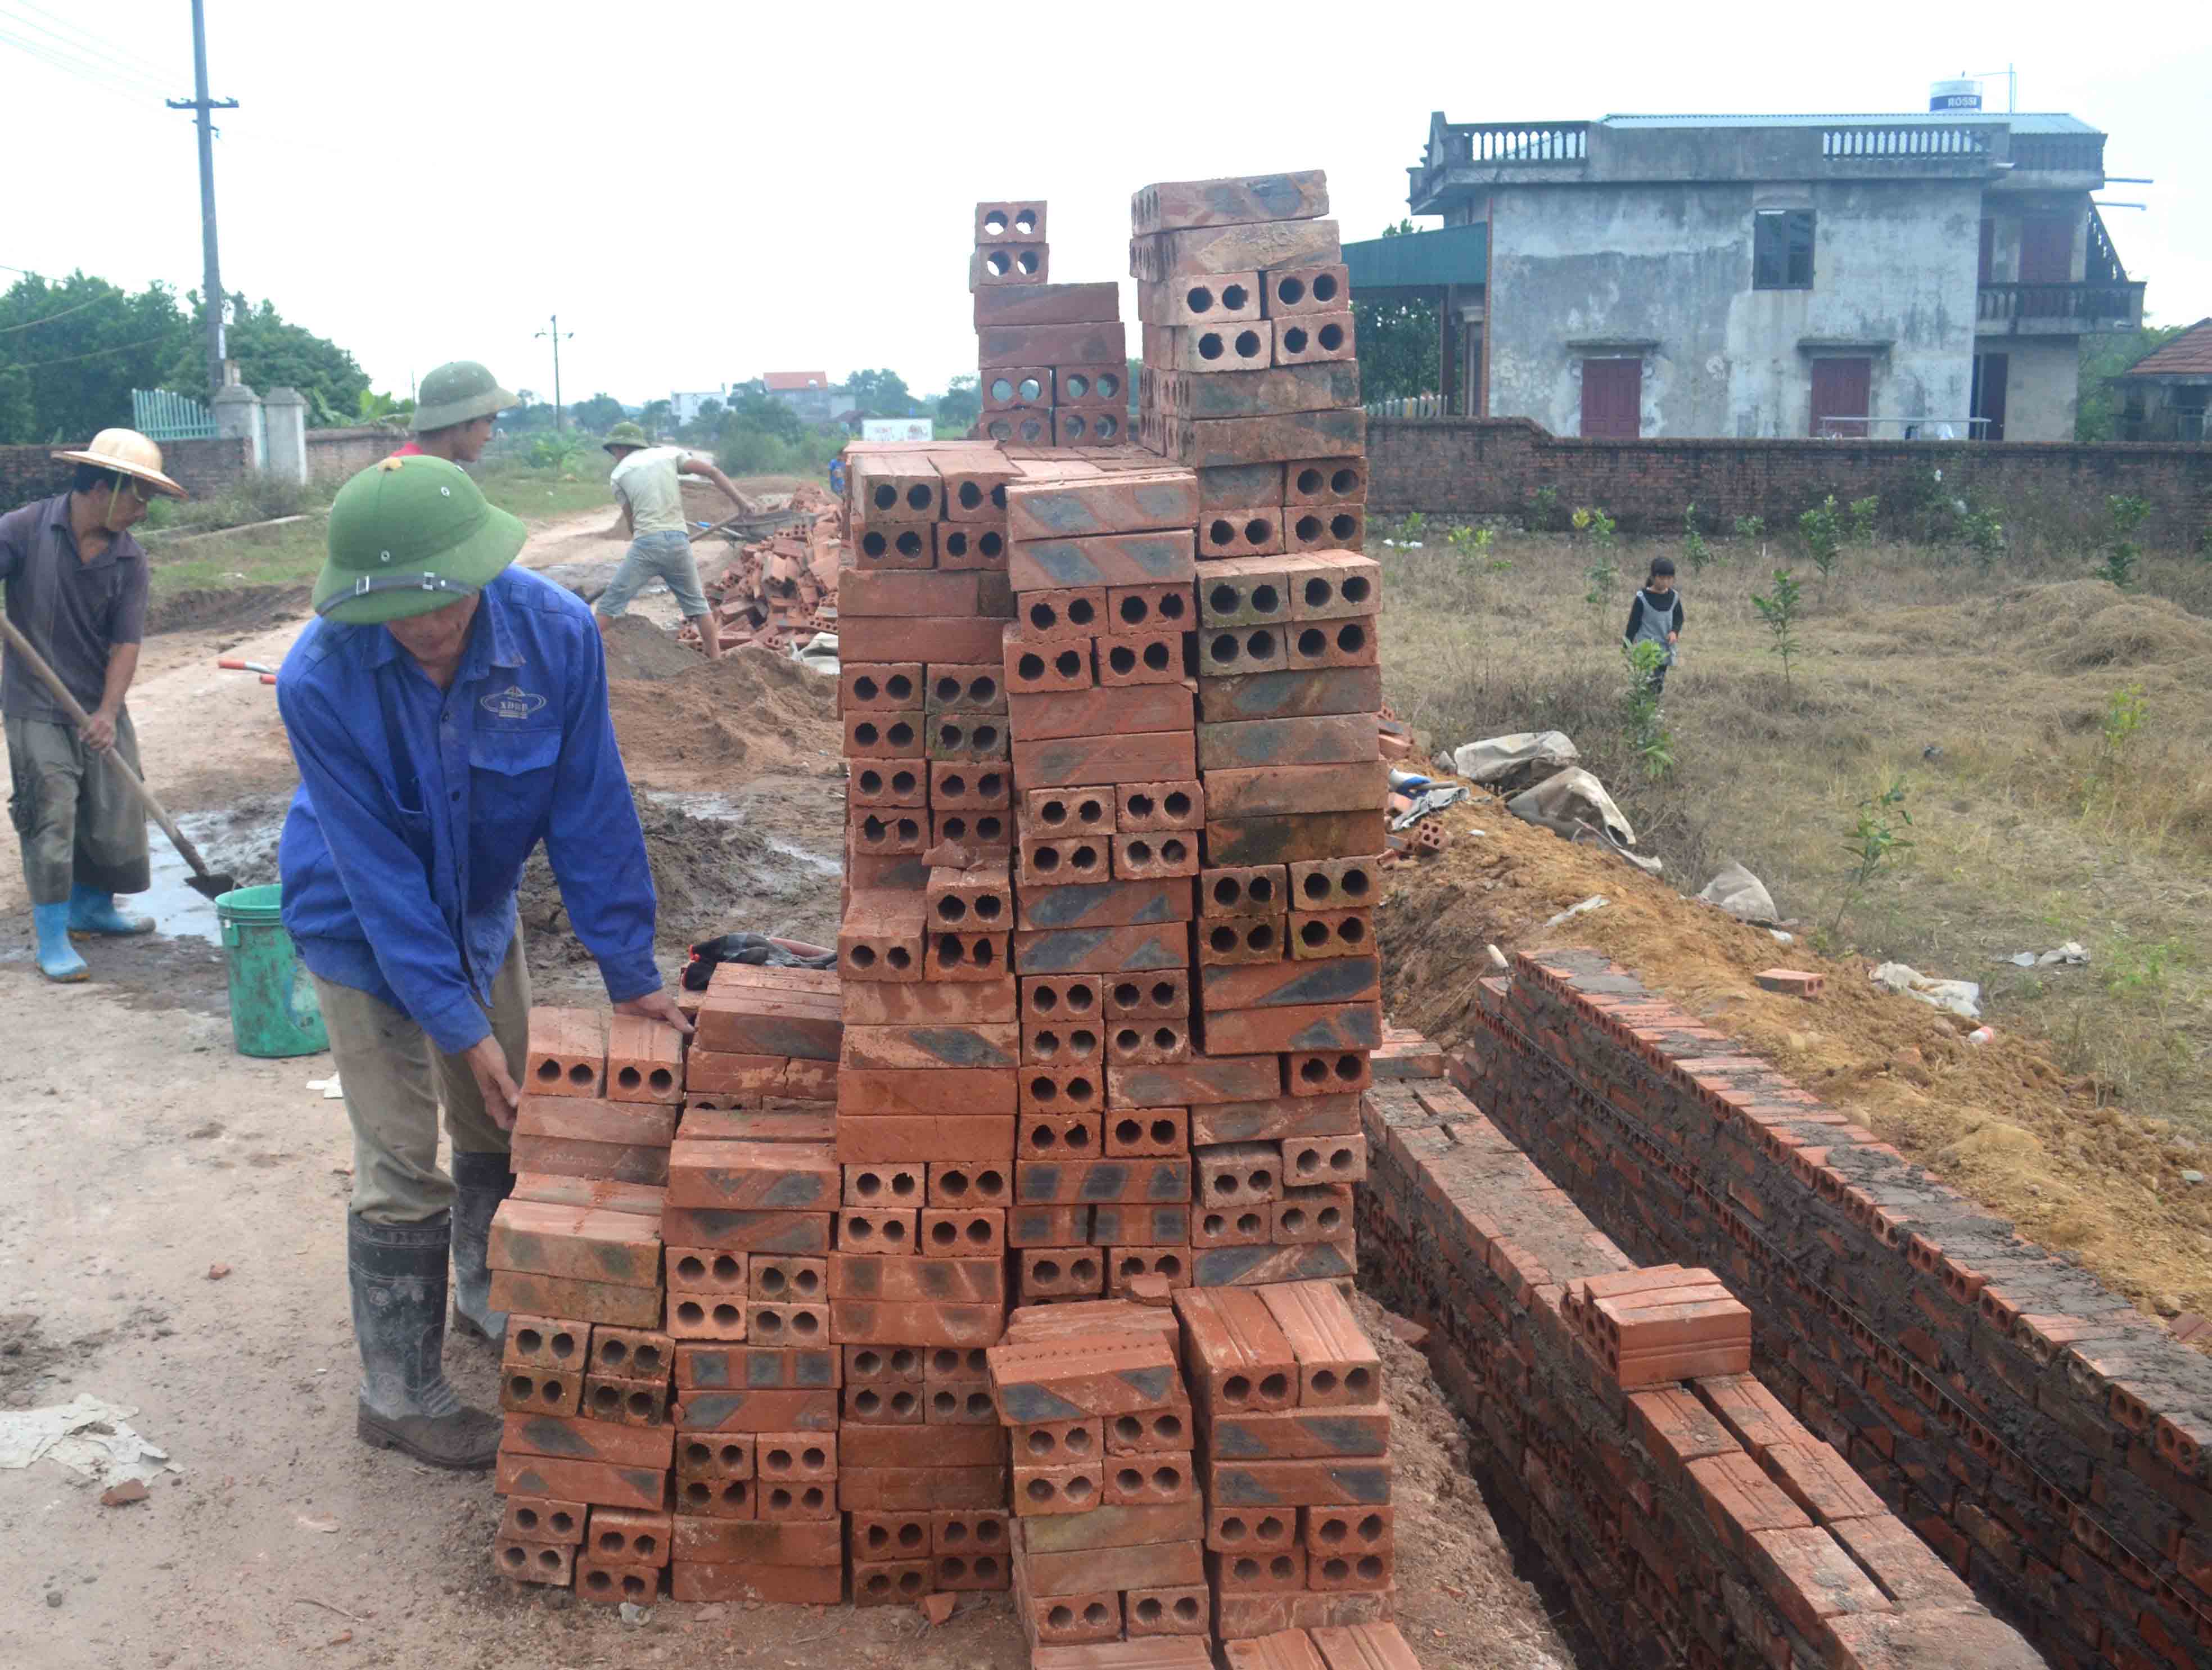 Sau khi hoàn thành nhà ở, anh Chíu Phún Sáng, thôn Mào Lẻng, xã Quảng Lâm đã tích cực với nghề thợ xây và đã trả gần hết nợ